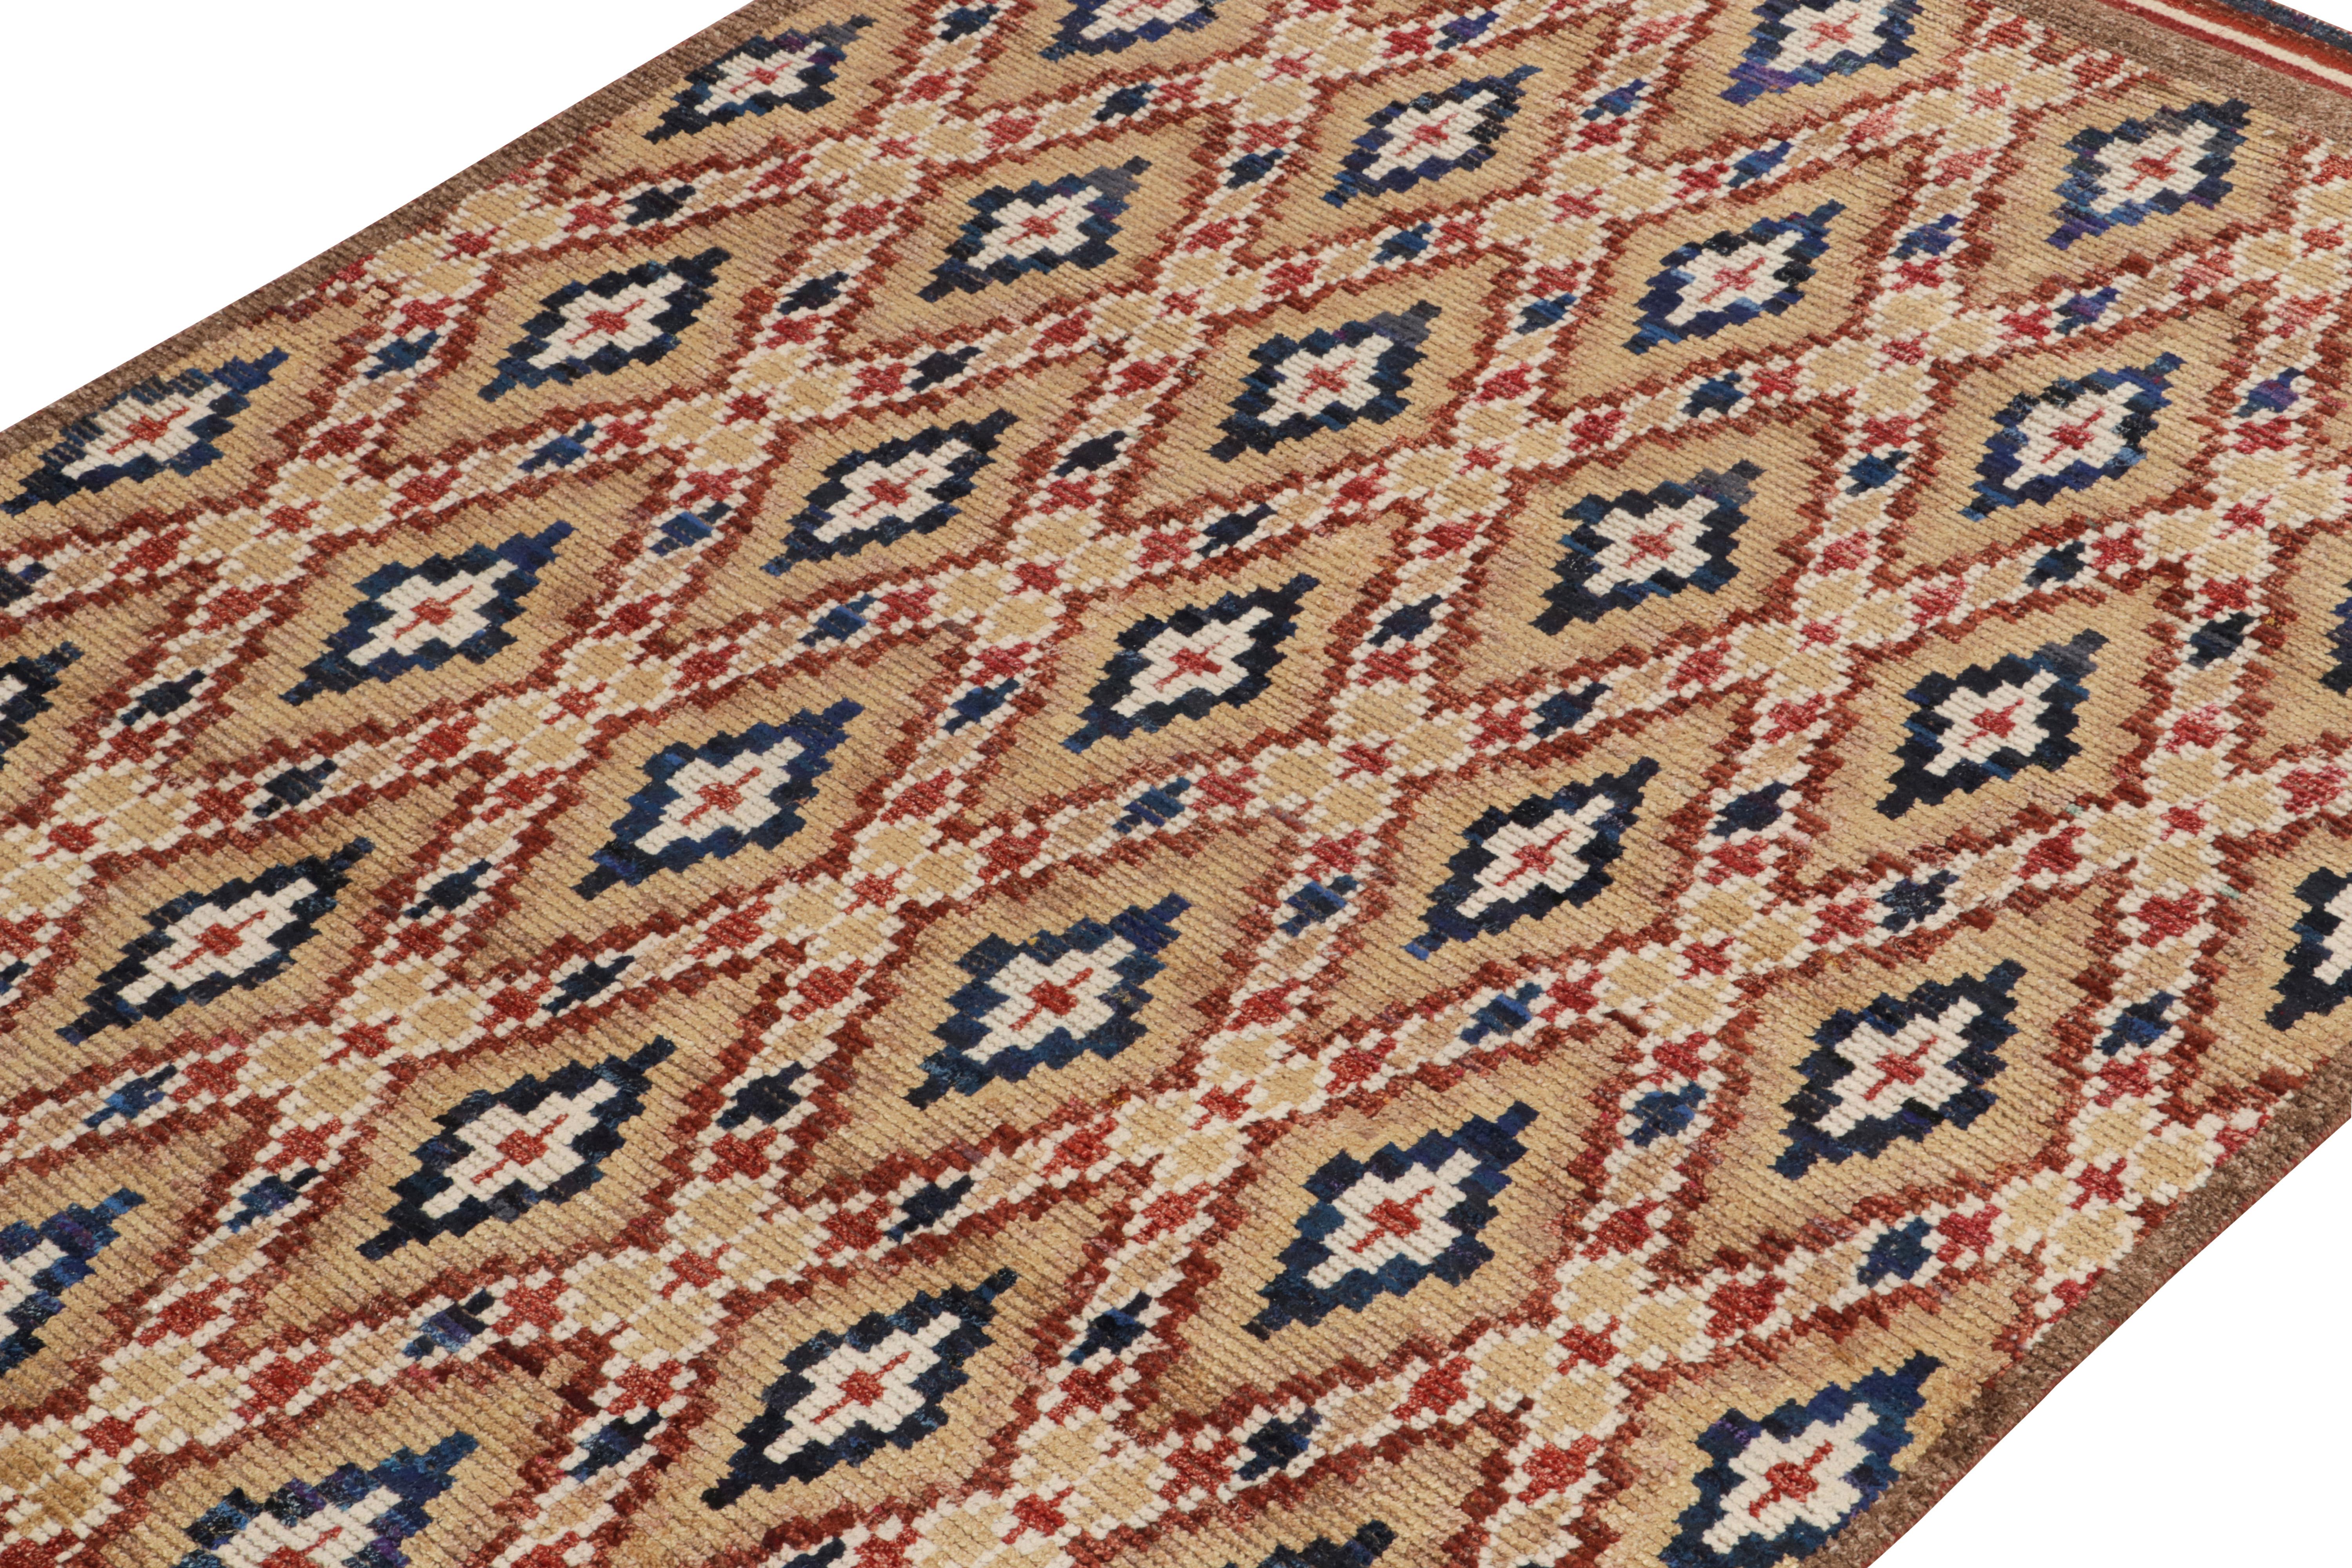 Indien Rug & Kilim's Moroccan Style Rug in Beige-Brown, Red and Blue Diamond Patterns (tapis de style marocain à motifs de diamants beige, marron, rouge et bleu) en vente